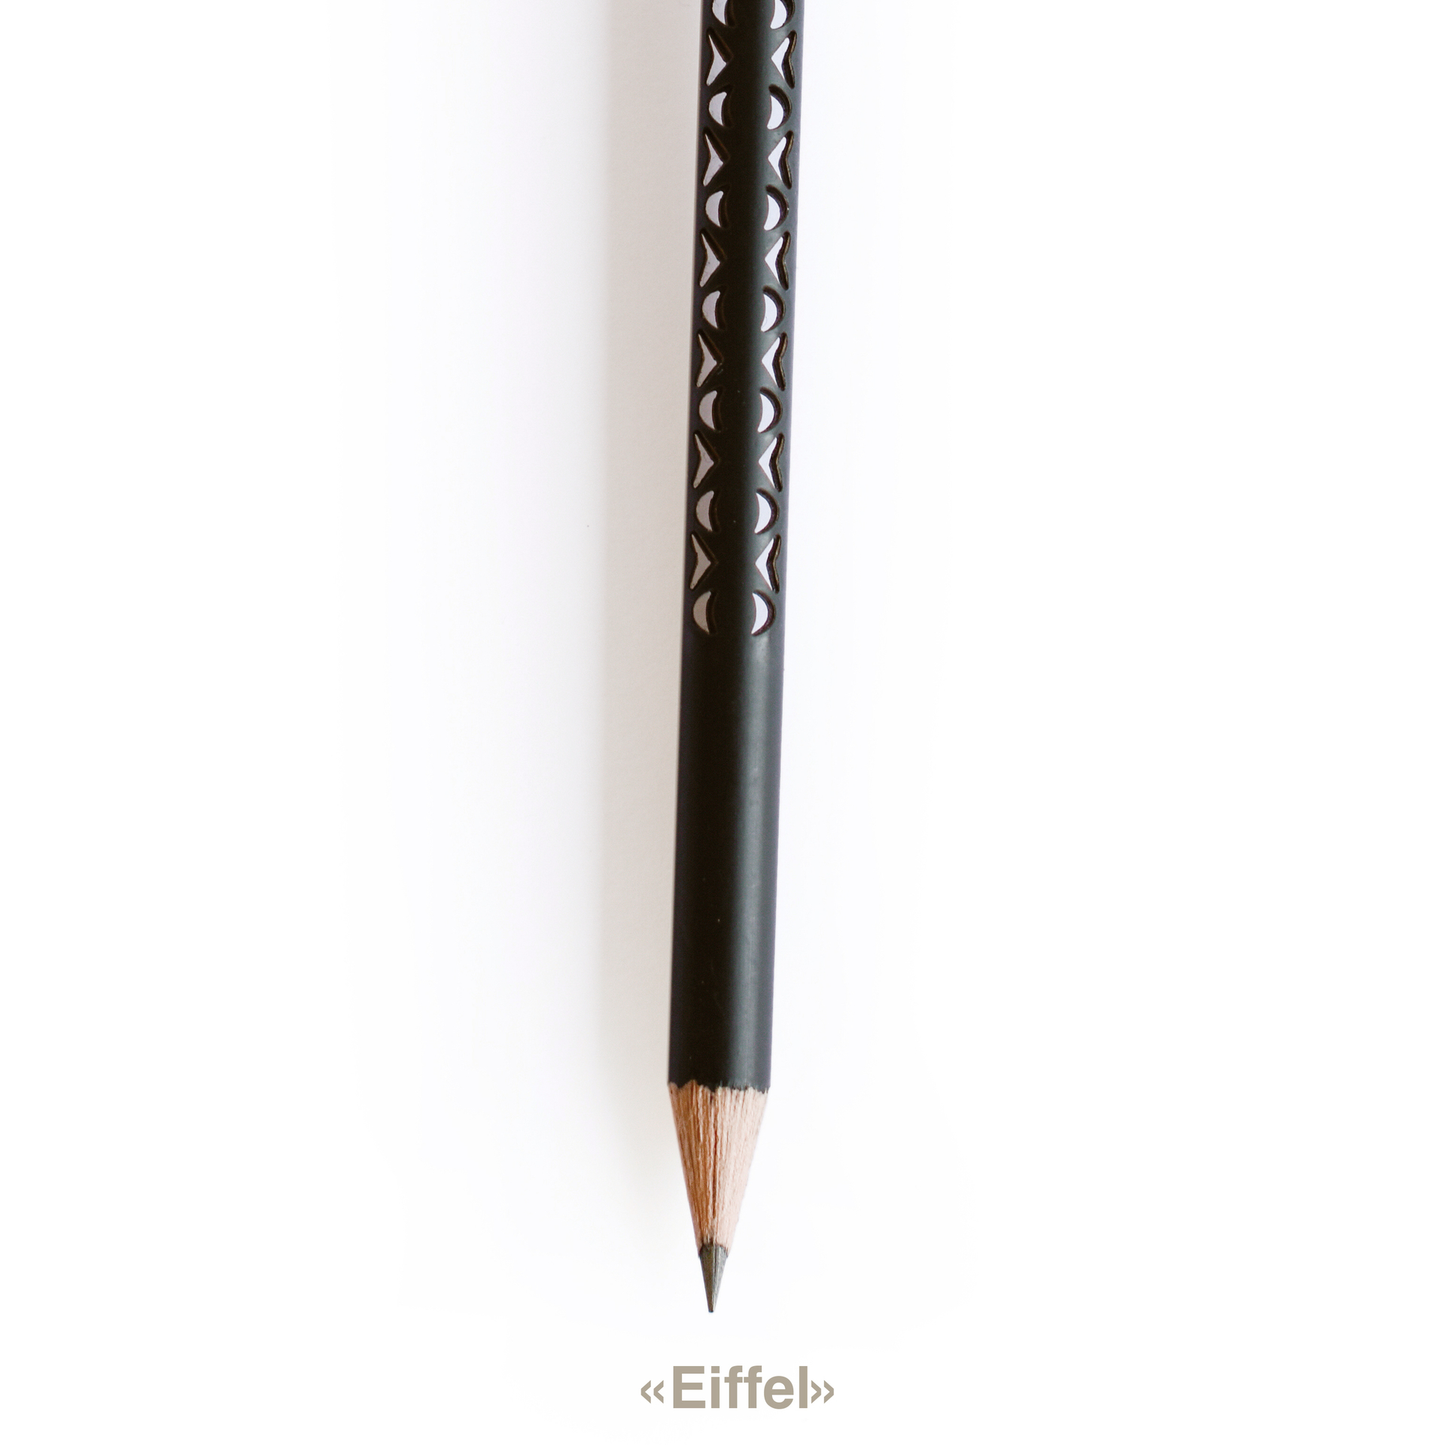 tät-tat - Bleistifte / Pencils